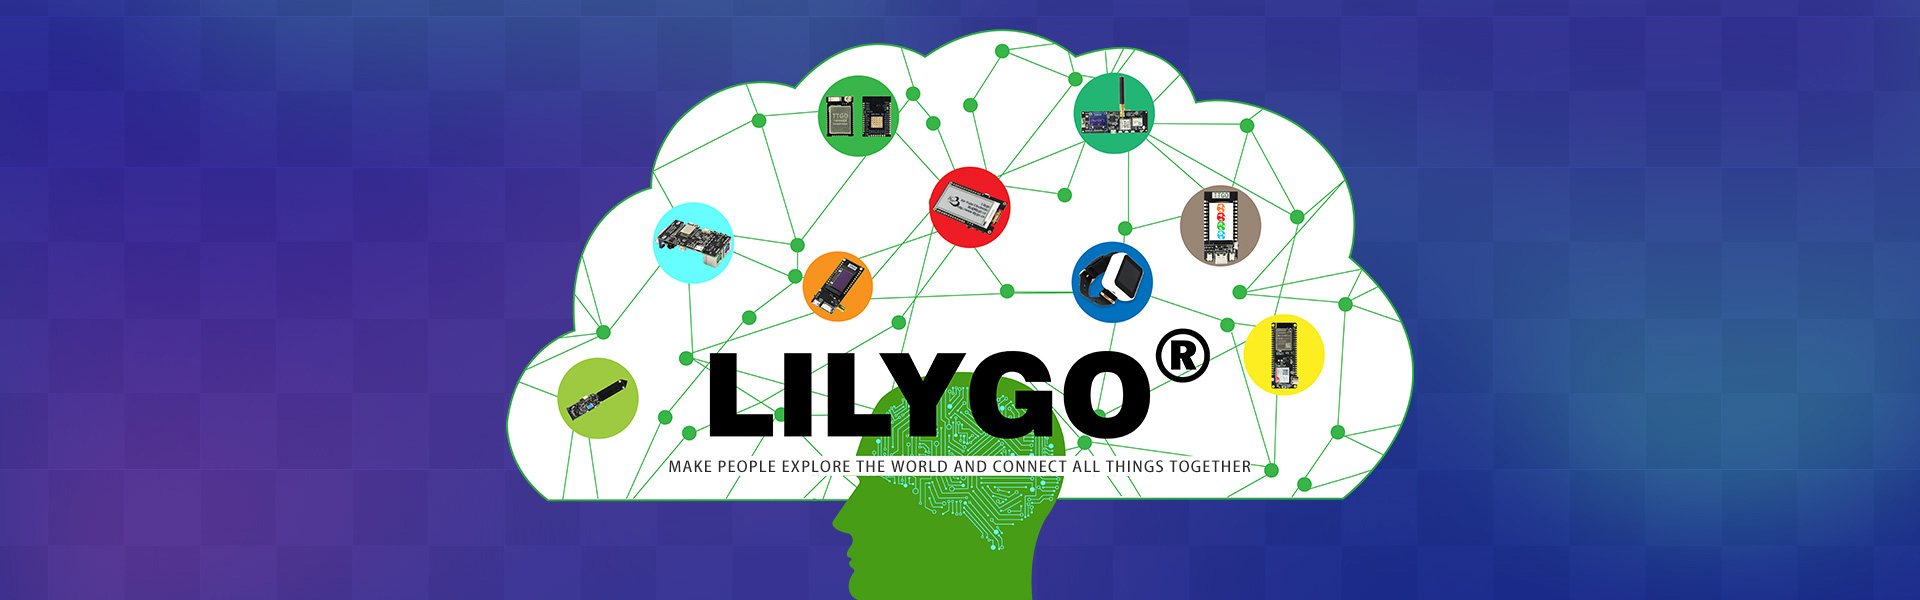 Lilygo Ttgo T Display Esp32 Wifi And Bluetooth Module Development Board For Arduino 1 14 Inch Lcd Esp32 Module Shenzhen Xin Yuan Electronic Technology Co Ltd